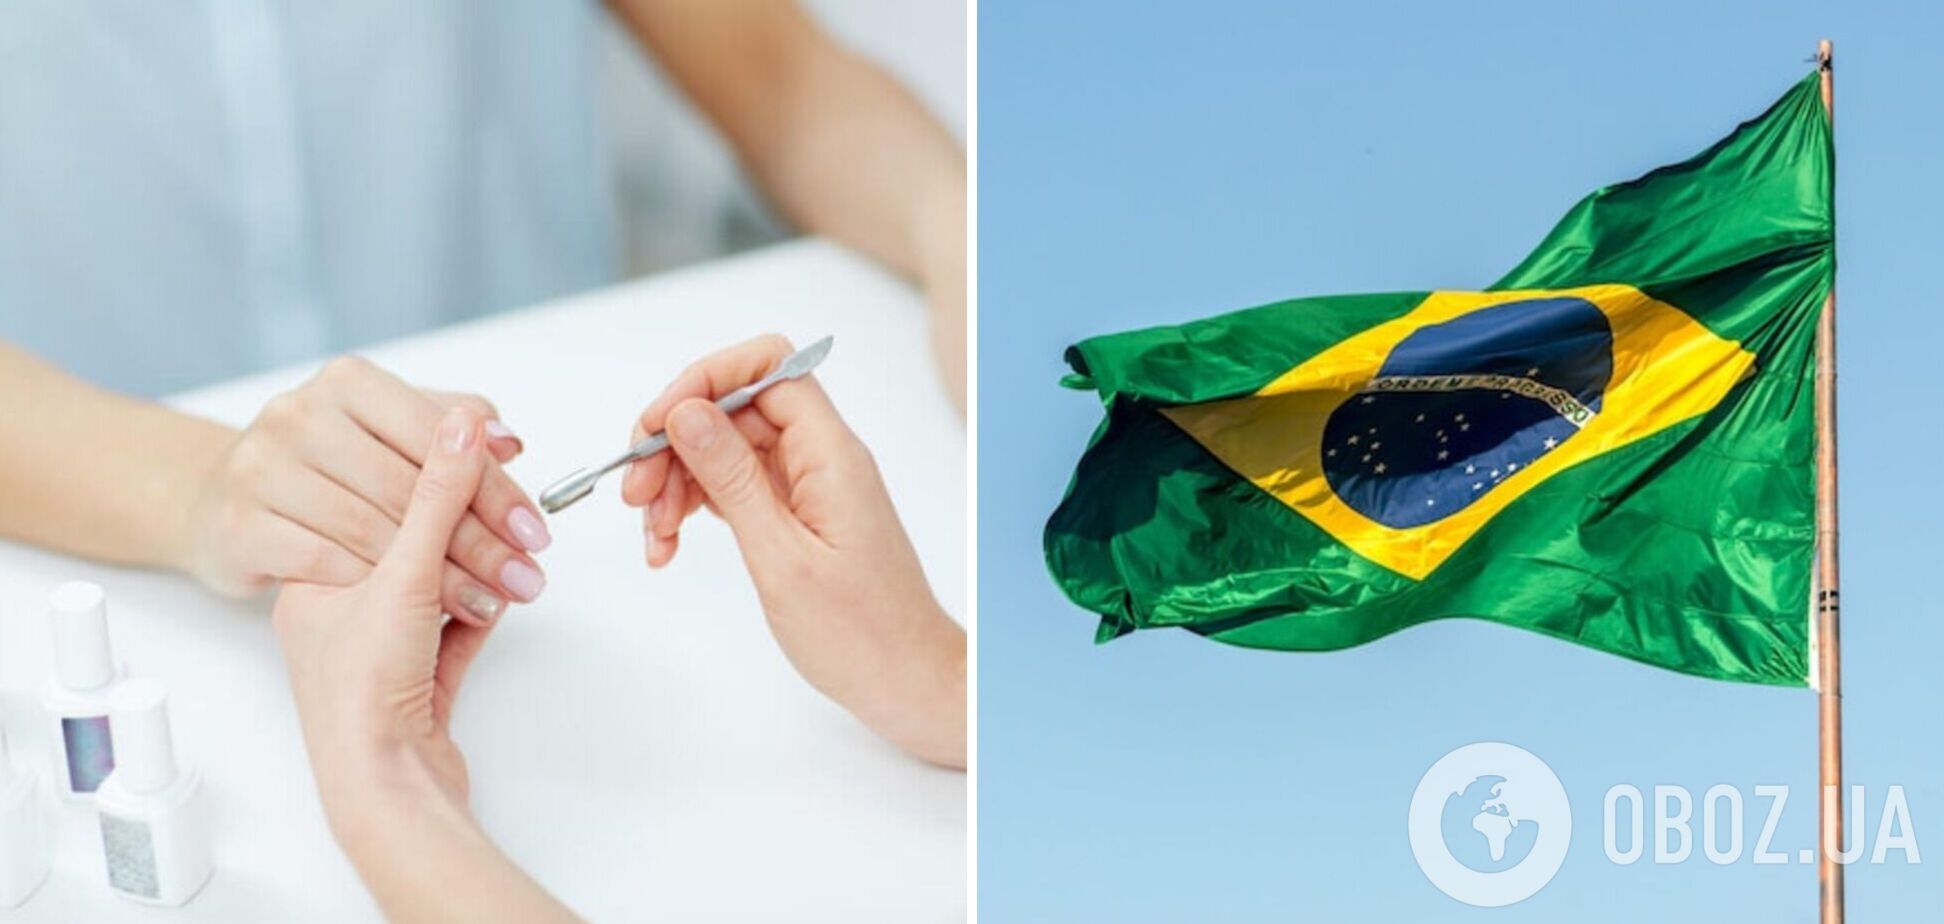 Бразильский маникюр набирает популярность в сети: в чем его особенность